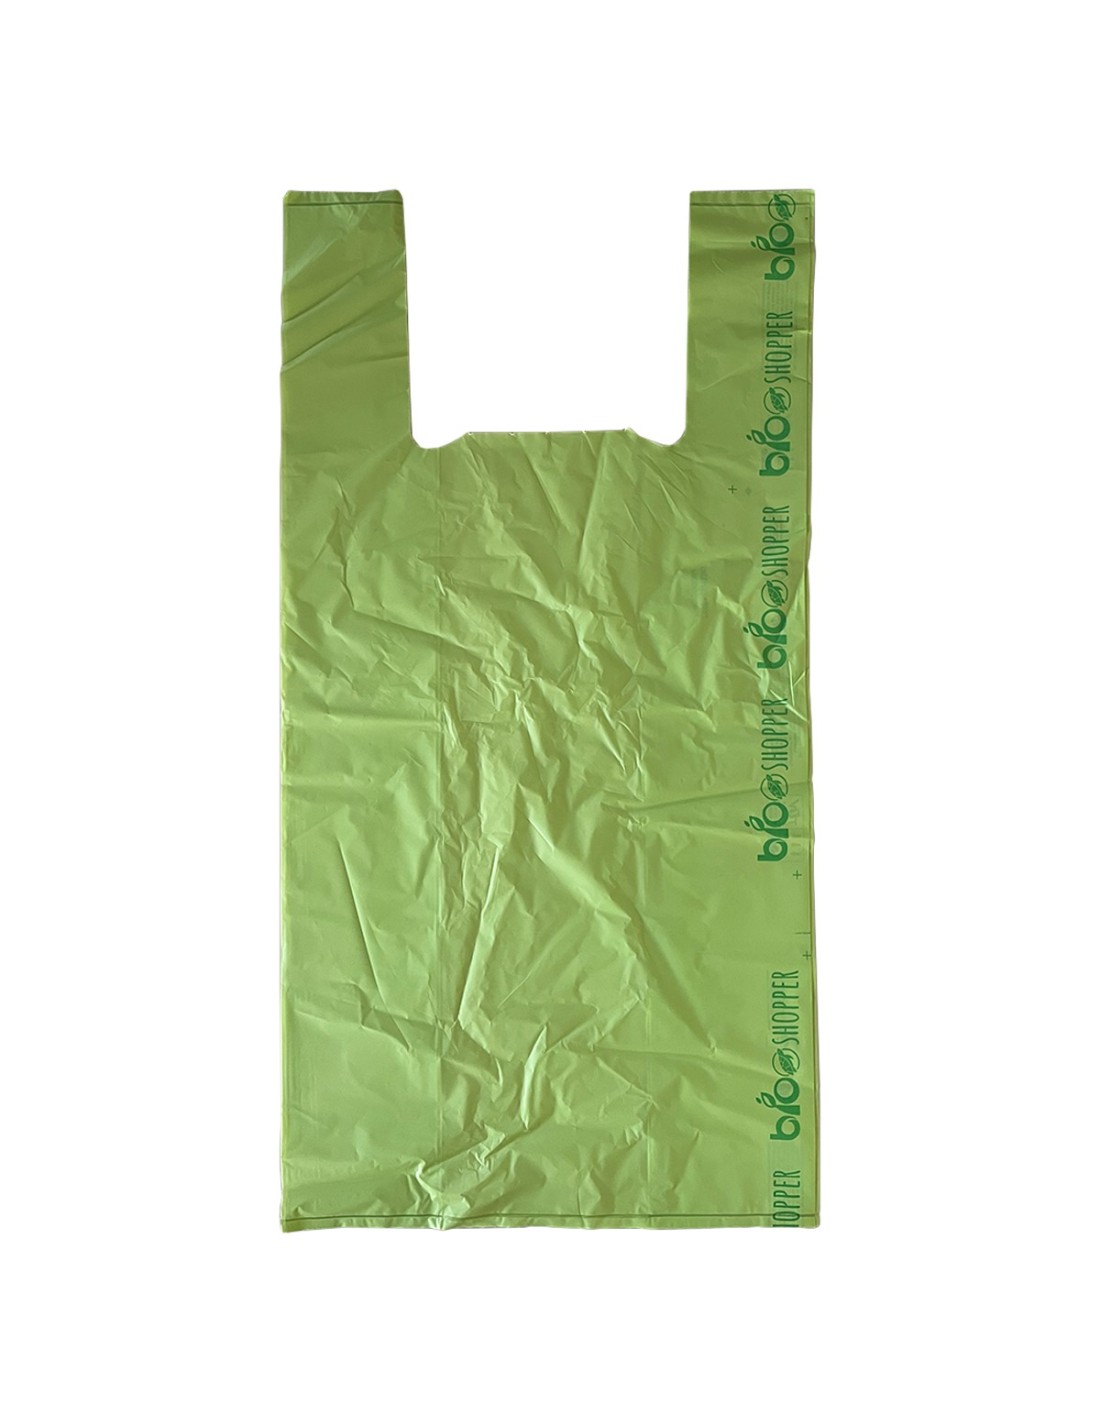 Imballaggi 2000 - Shopper Biodegradabili Maxi a Peso - 30X60 cm